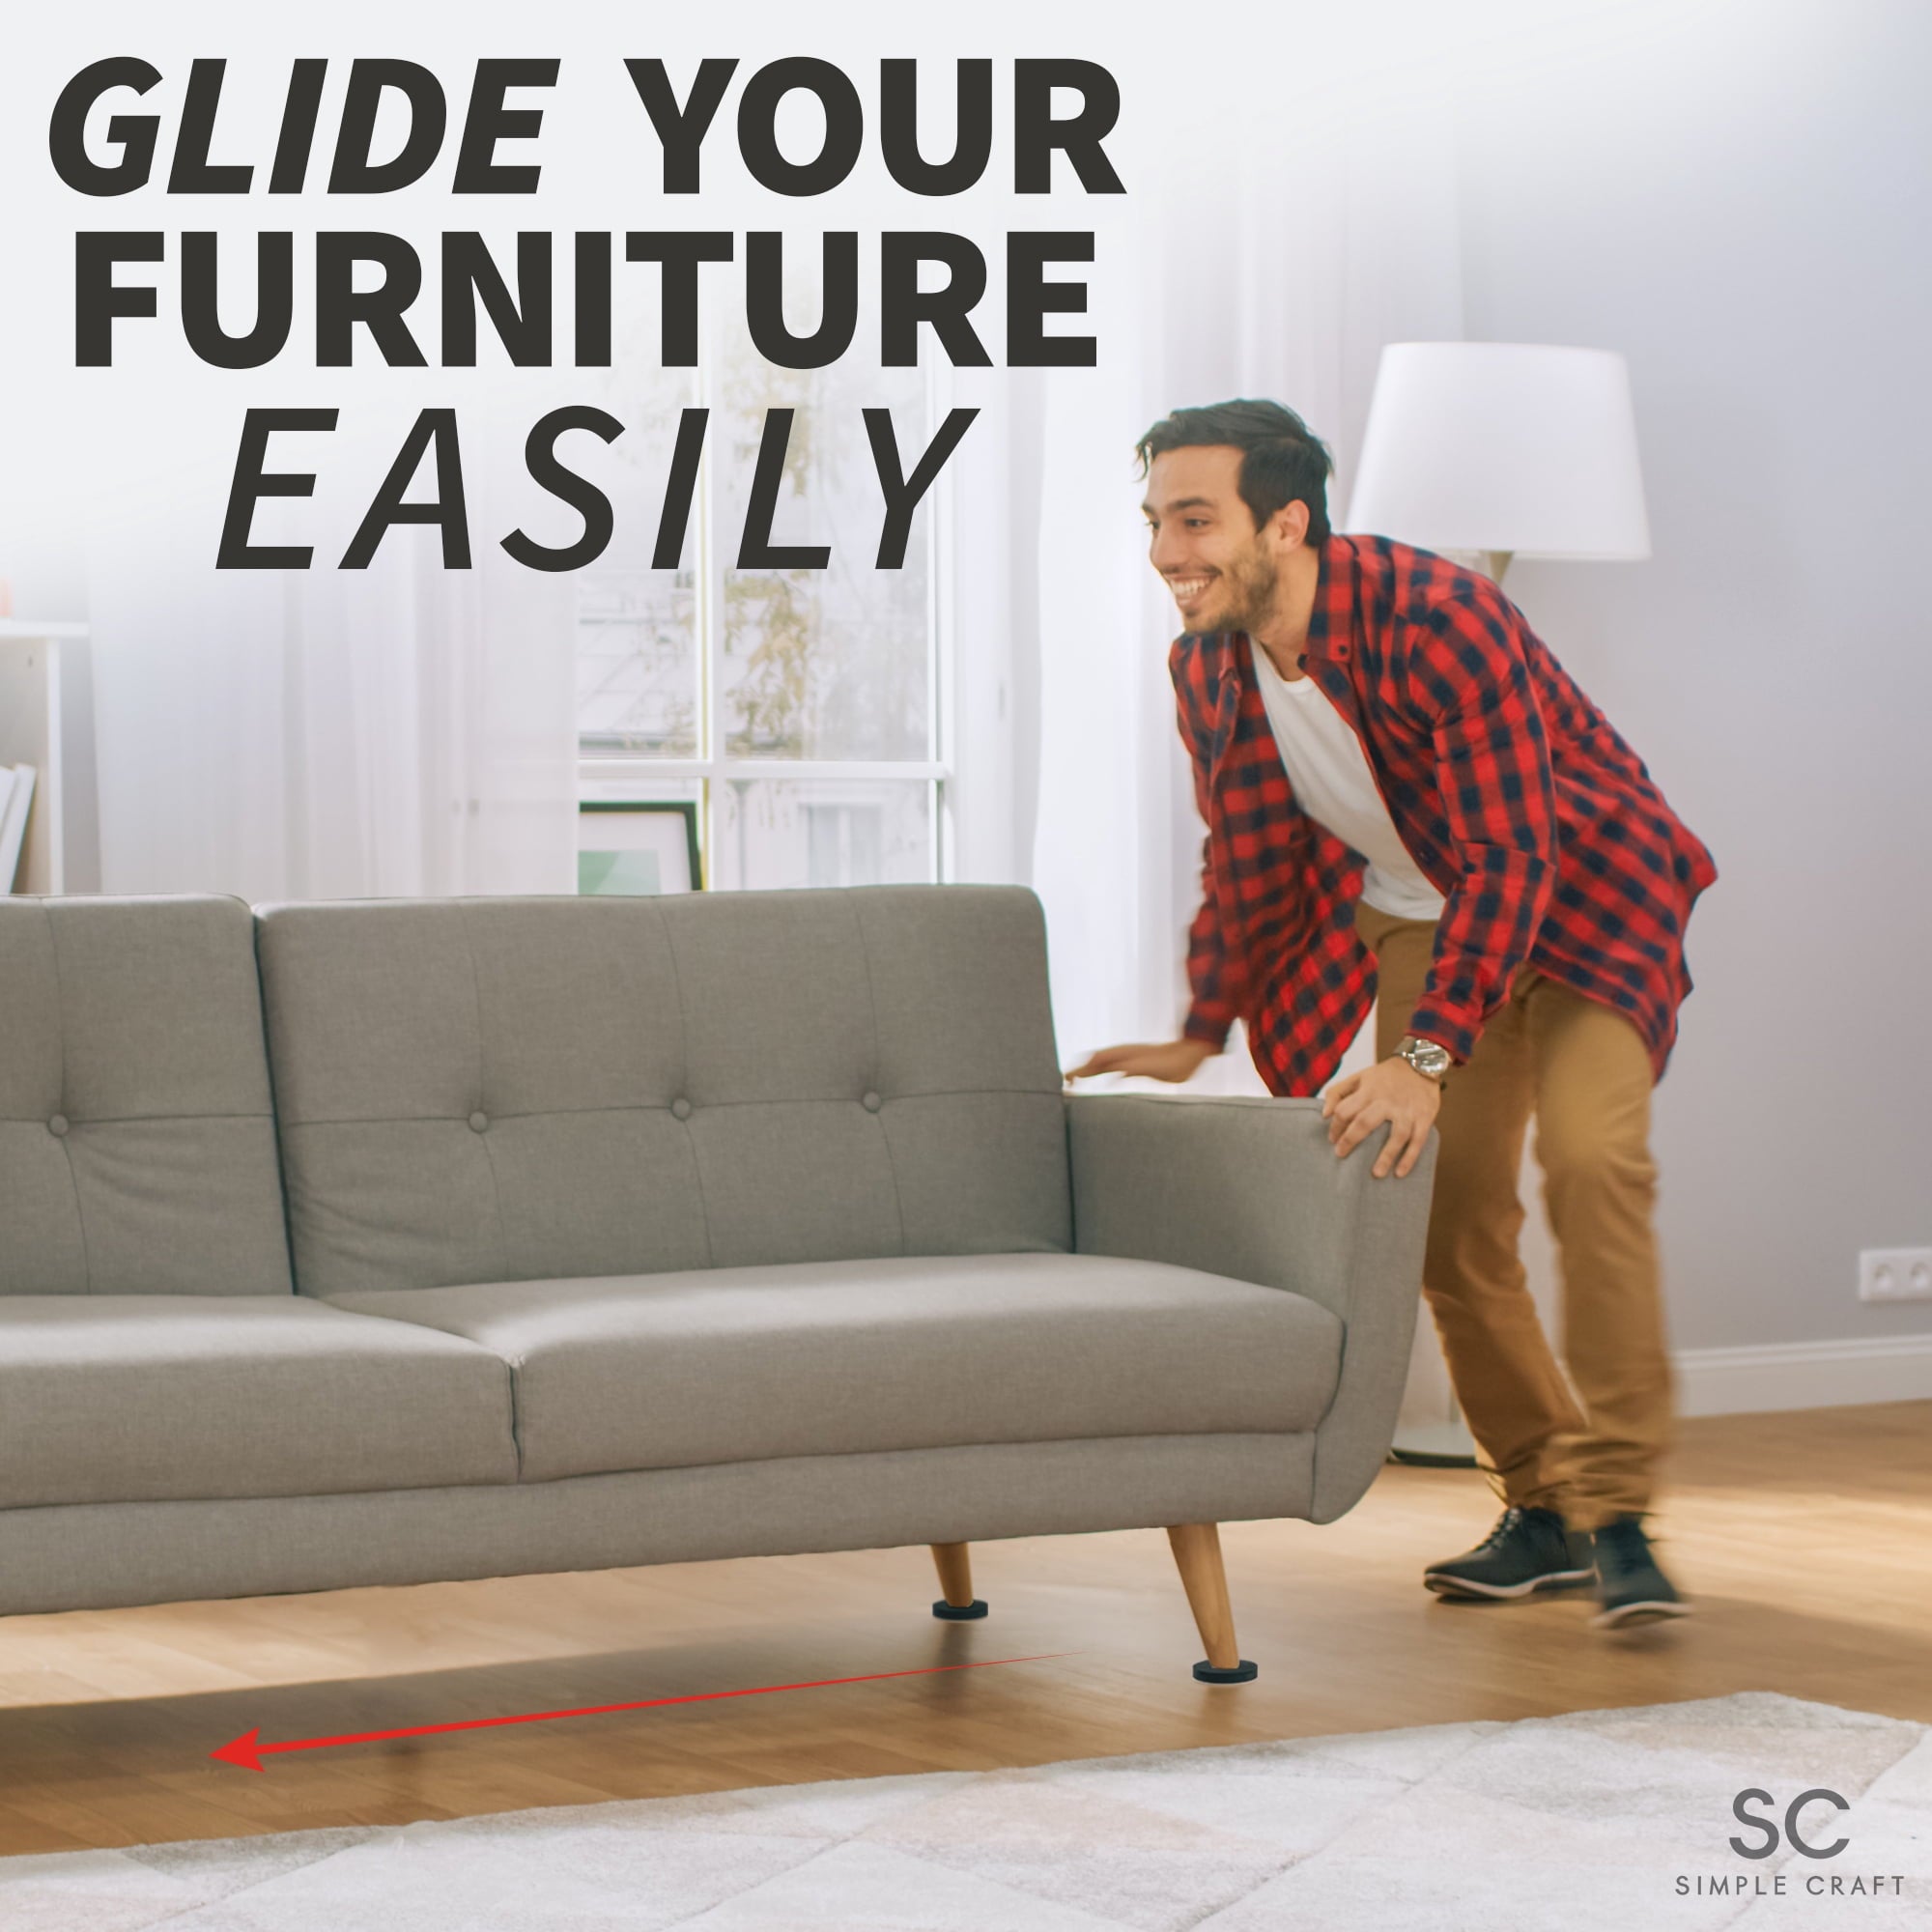 Simple Craft 16pcs Felt Furniture Sliders for Hardwood Floors 3 1/2" - Felt Pads